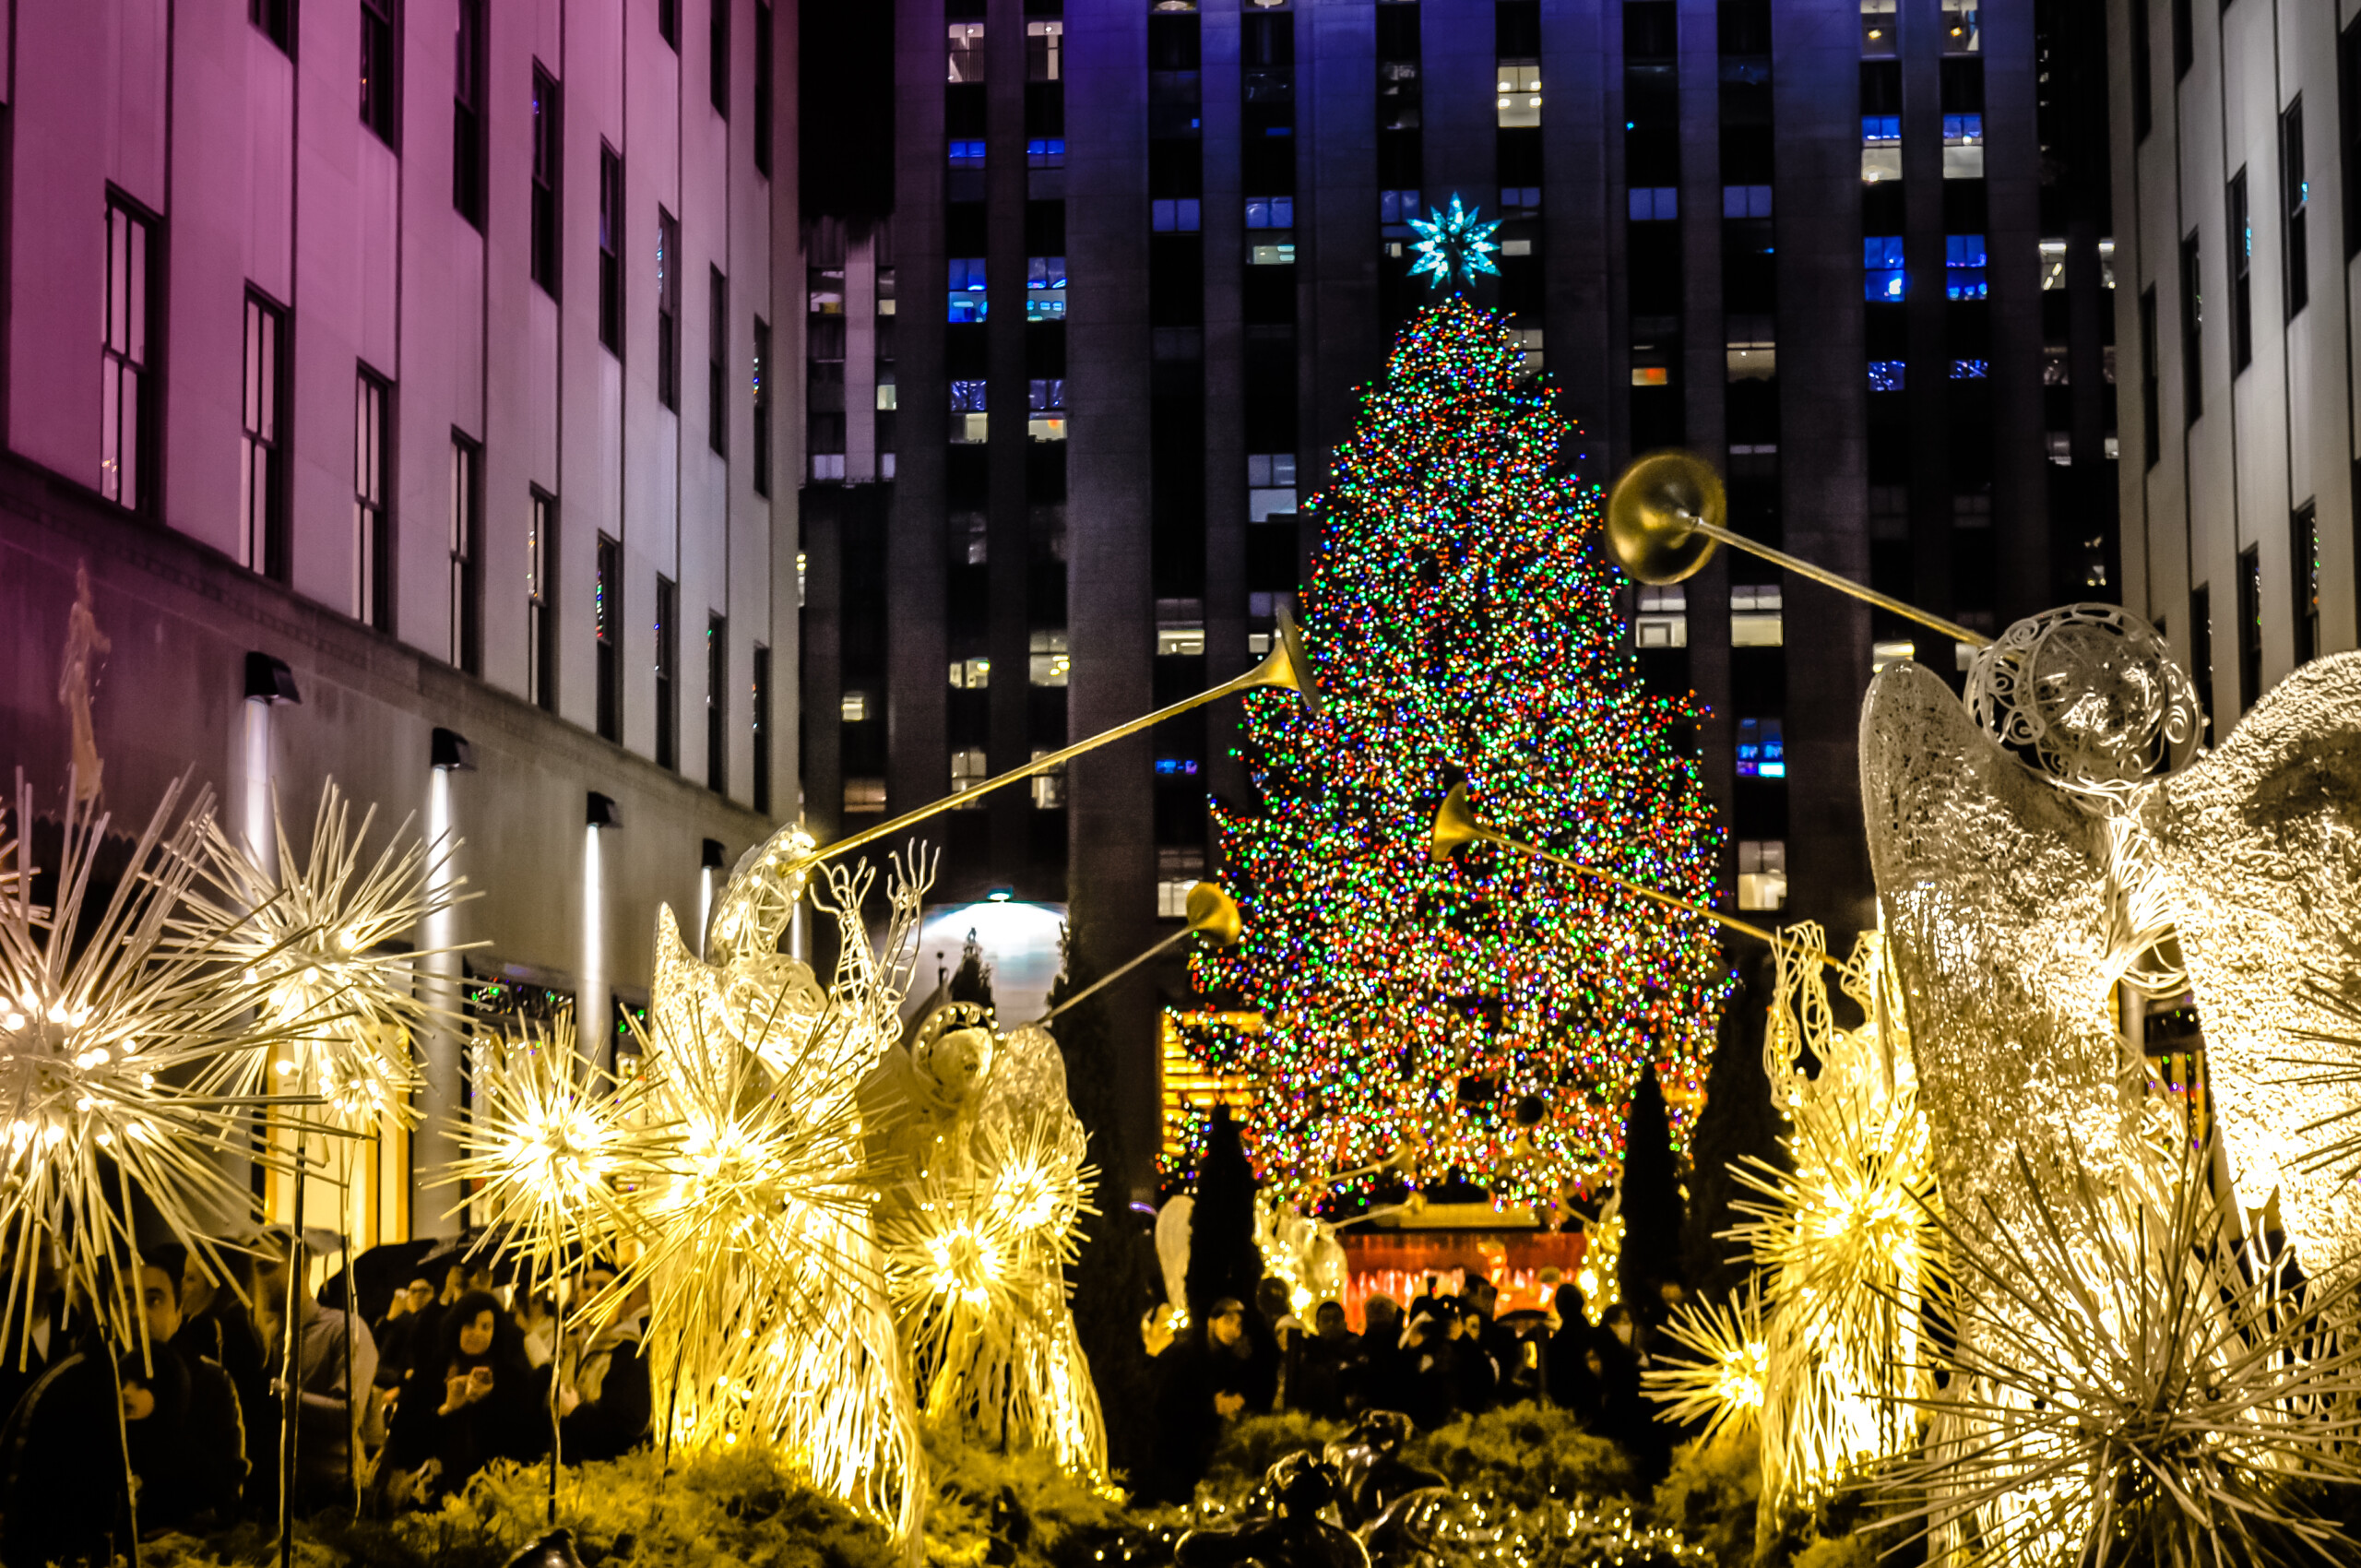 Nowy Jork, NY / USA - 12 23 2013: anioły z dużą choinką ze światłem przed centrum Rockefellera. Słynne dekoracje bożonarodzeniowe w Midtown na Manhattanie w centrum Nowego Jorku., licencja: shutterstock/By